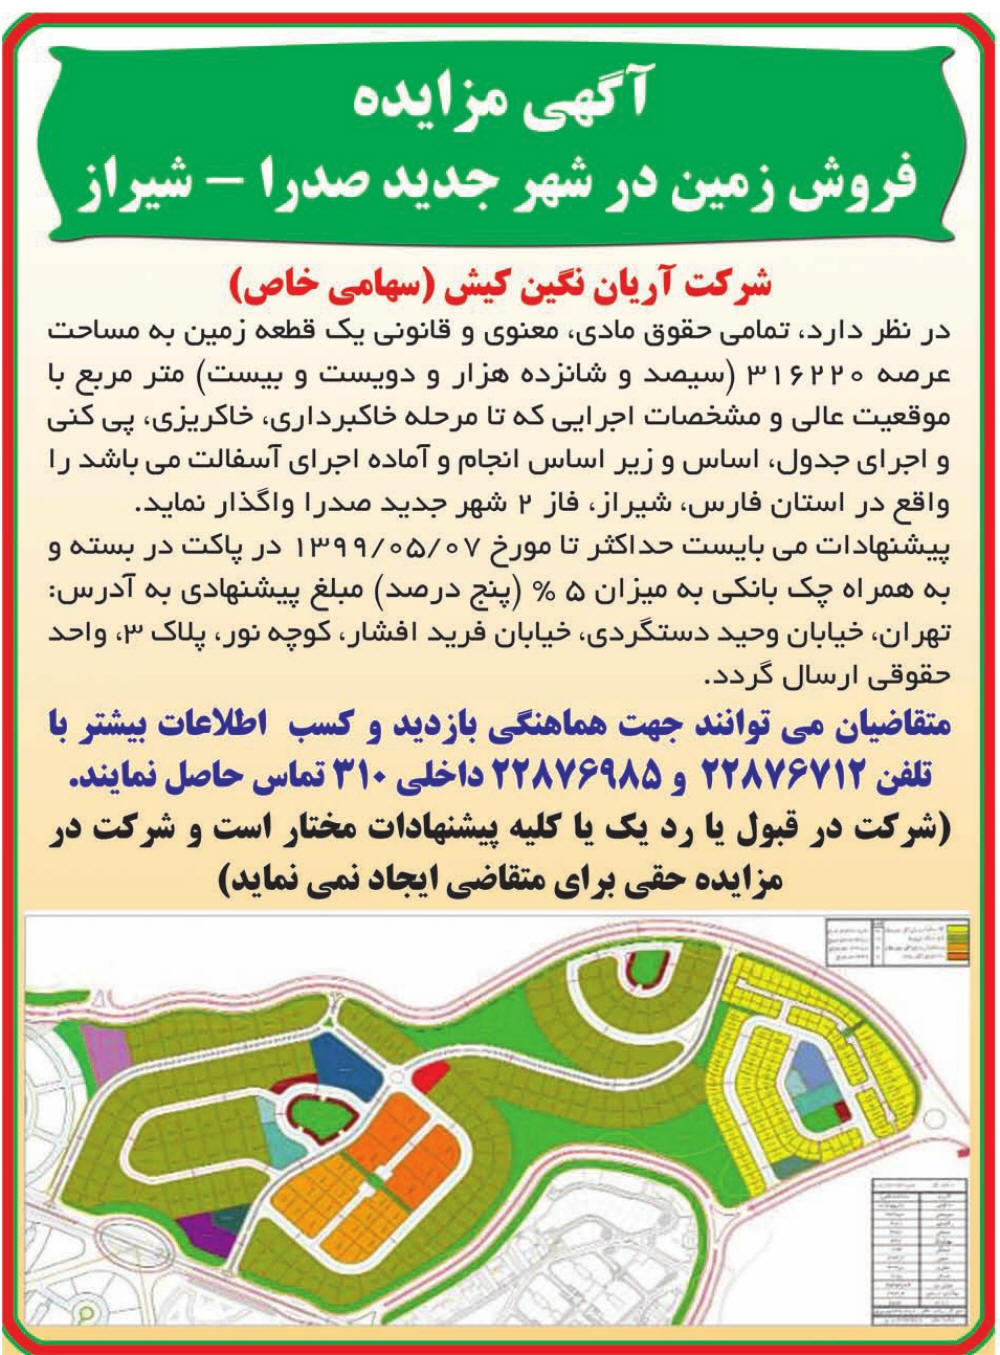 آگهی مزایده فروش زمین در شهر صدرا چاپ شده در روزنامه همشهری